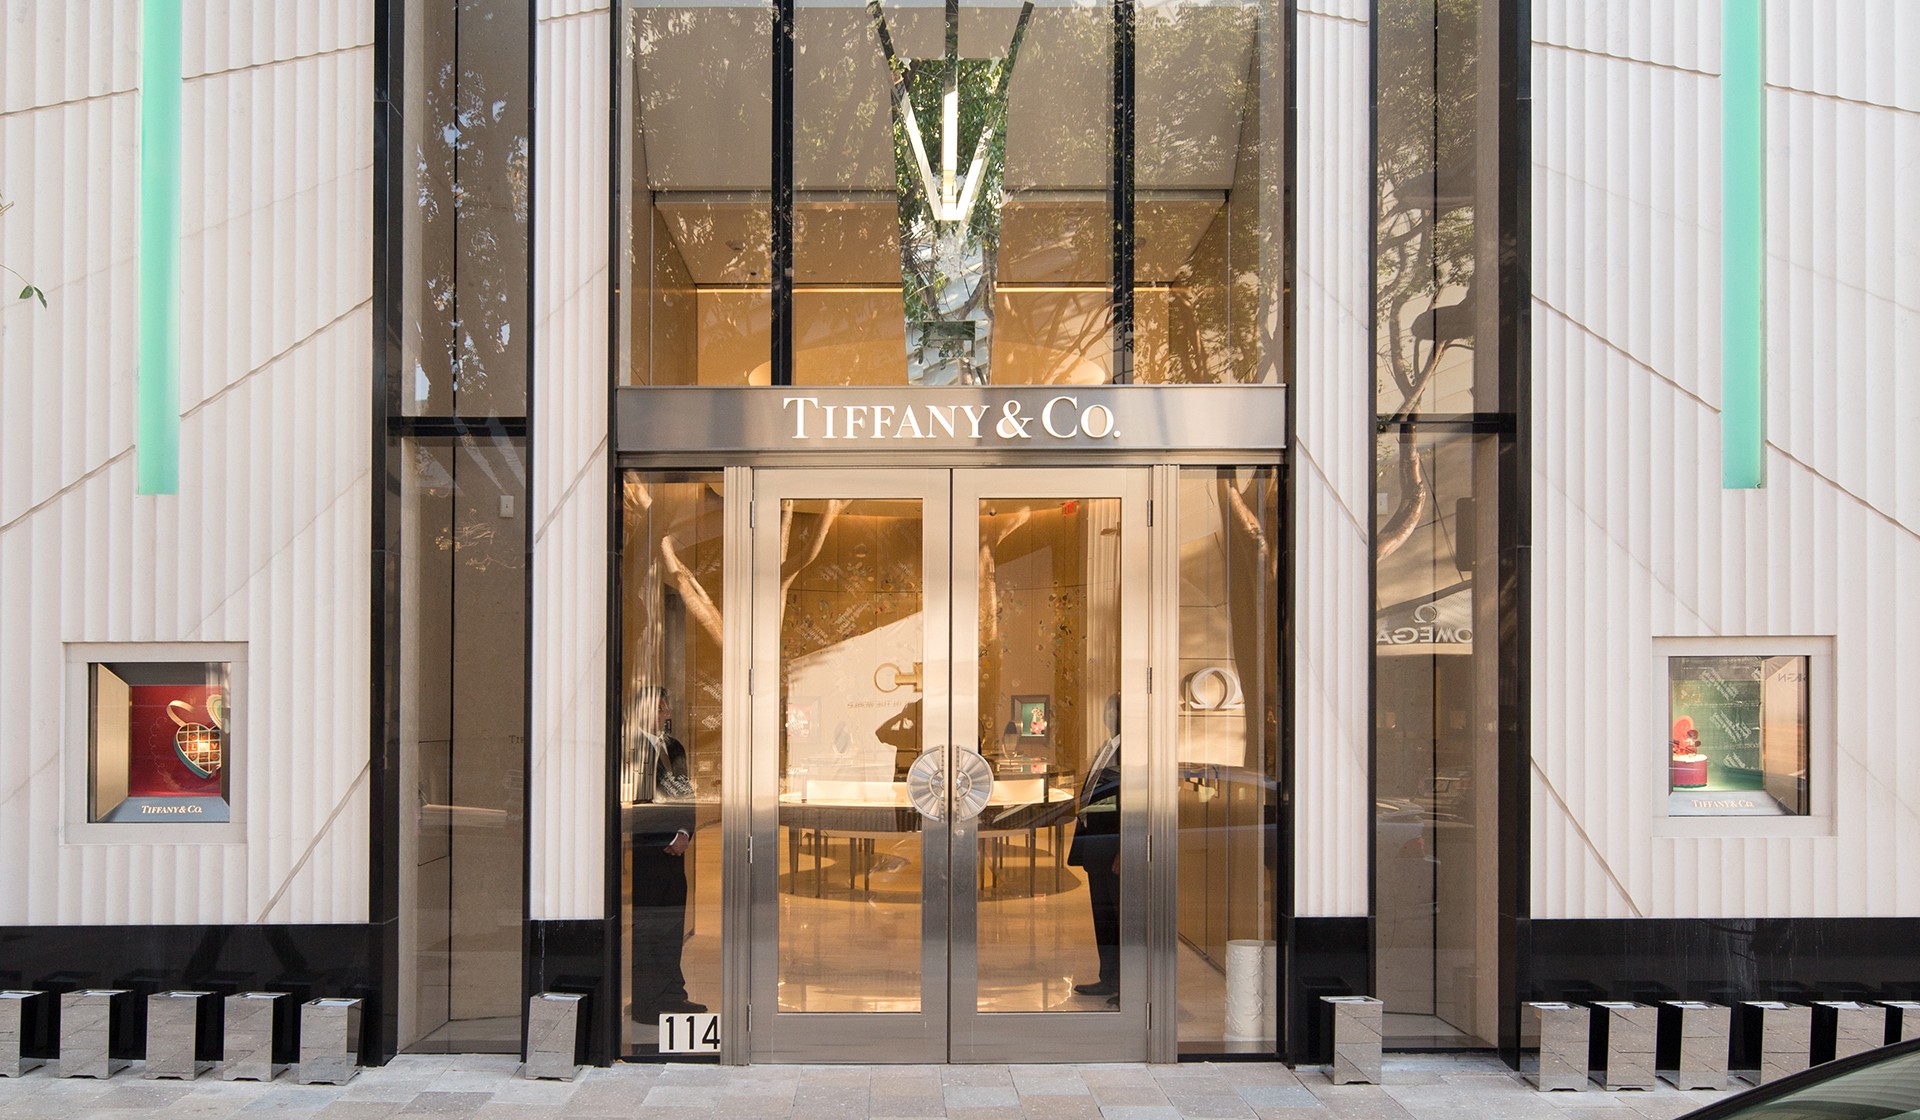 Tiffany & Co. Image